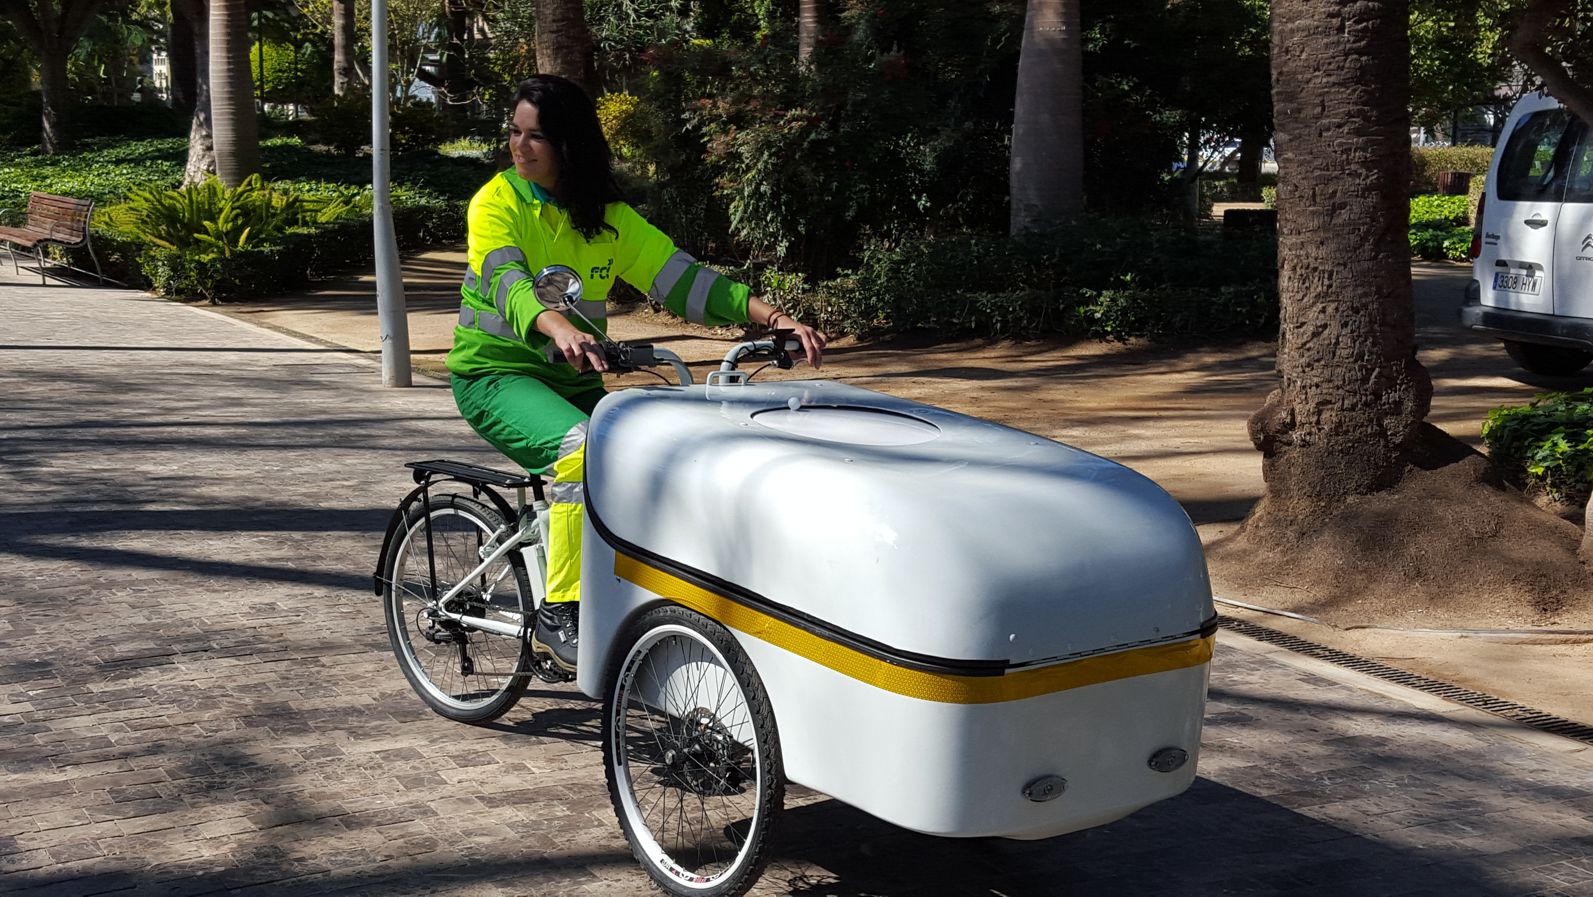  Ciclo de pedaleo asistido con motor eléctrico auxiliar LA PELUSA